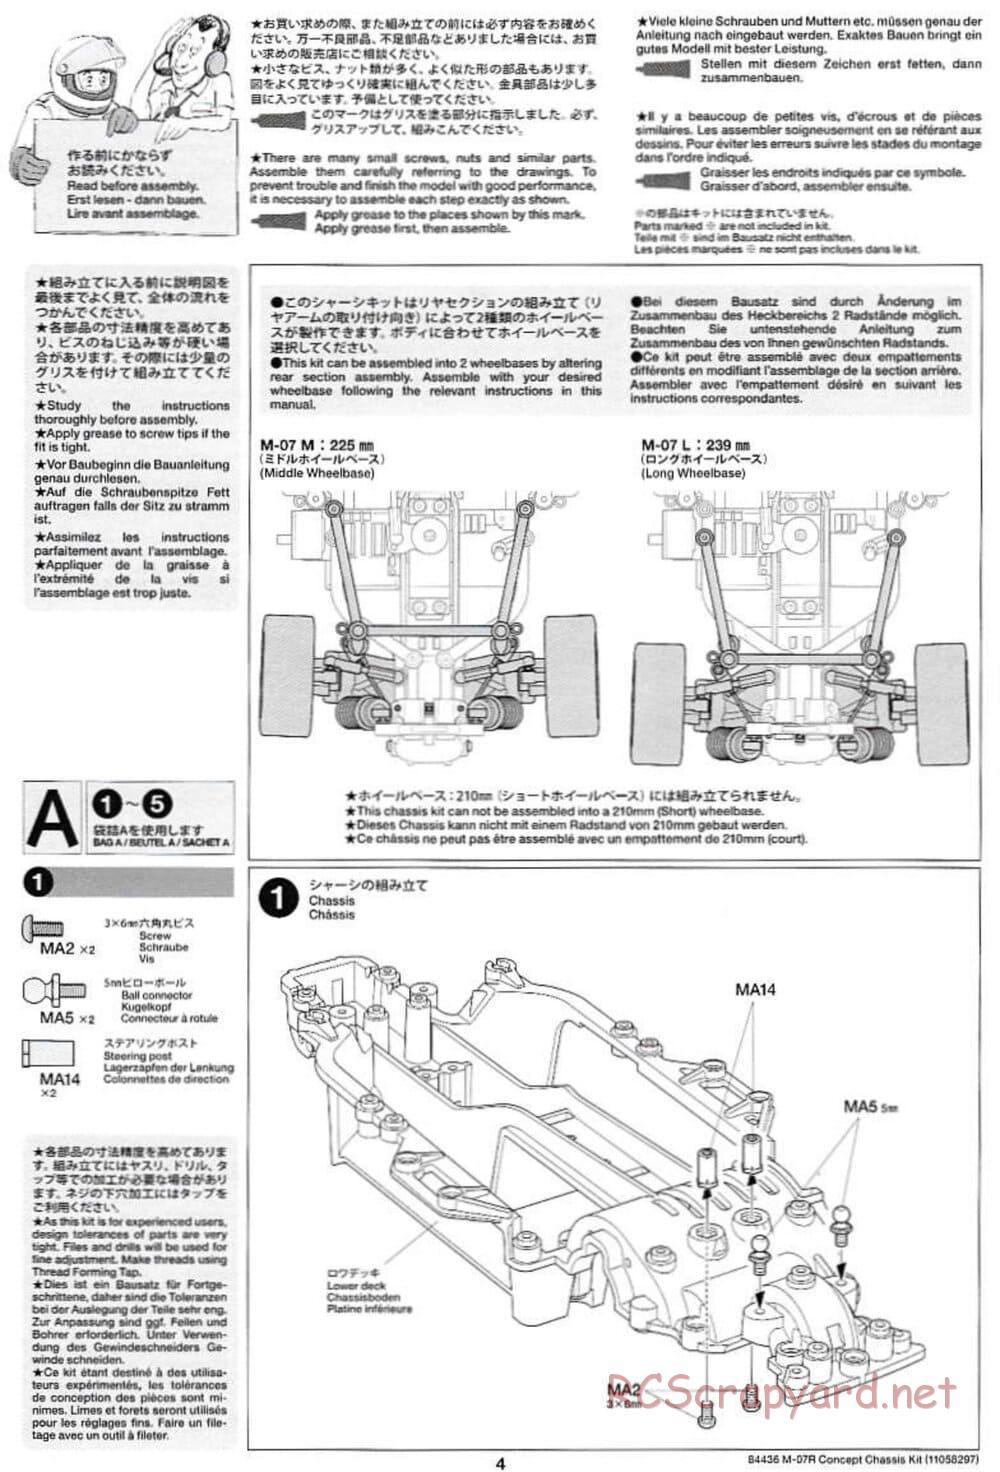 Tamiya - M-07R Chassis - Manual - Page 4